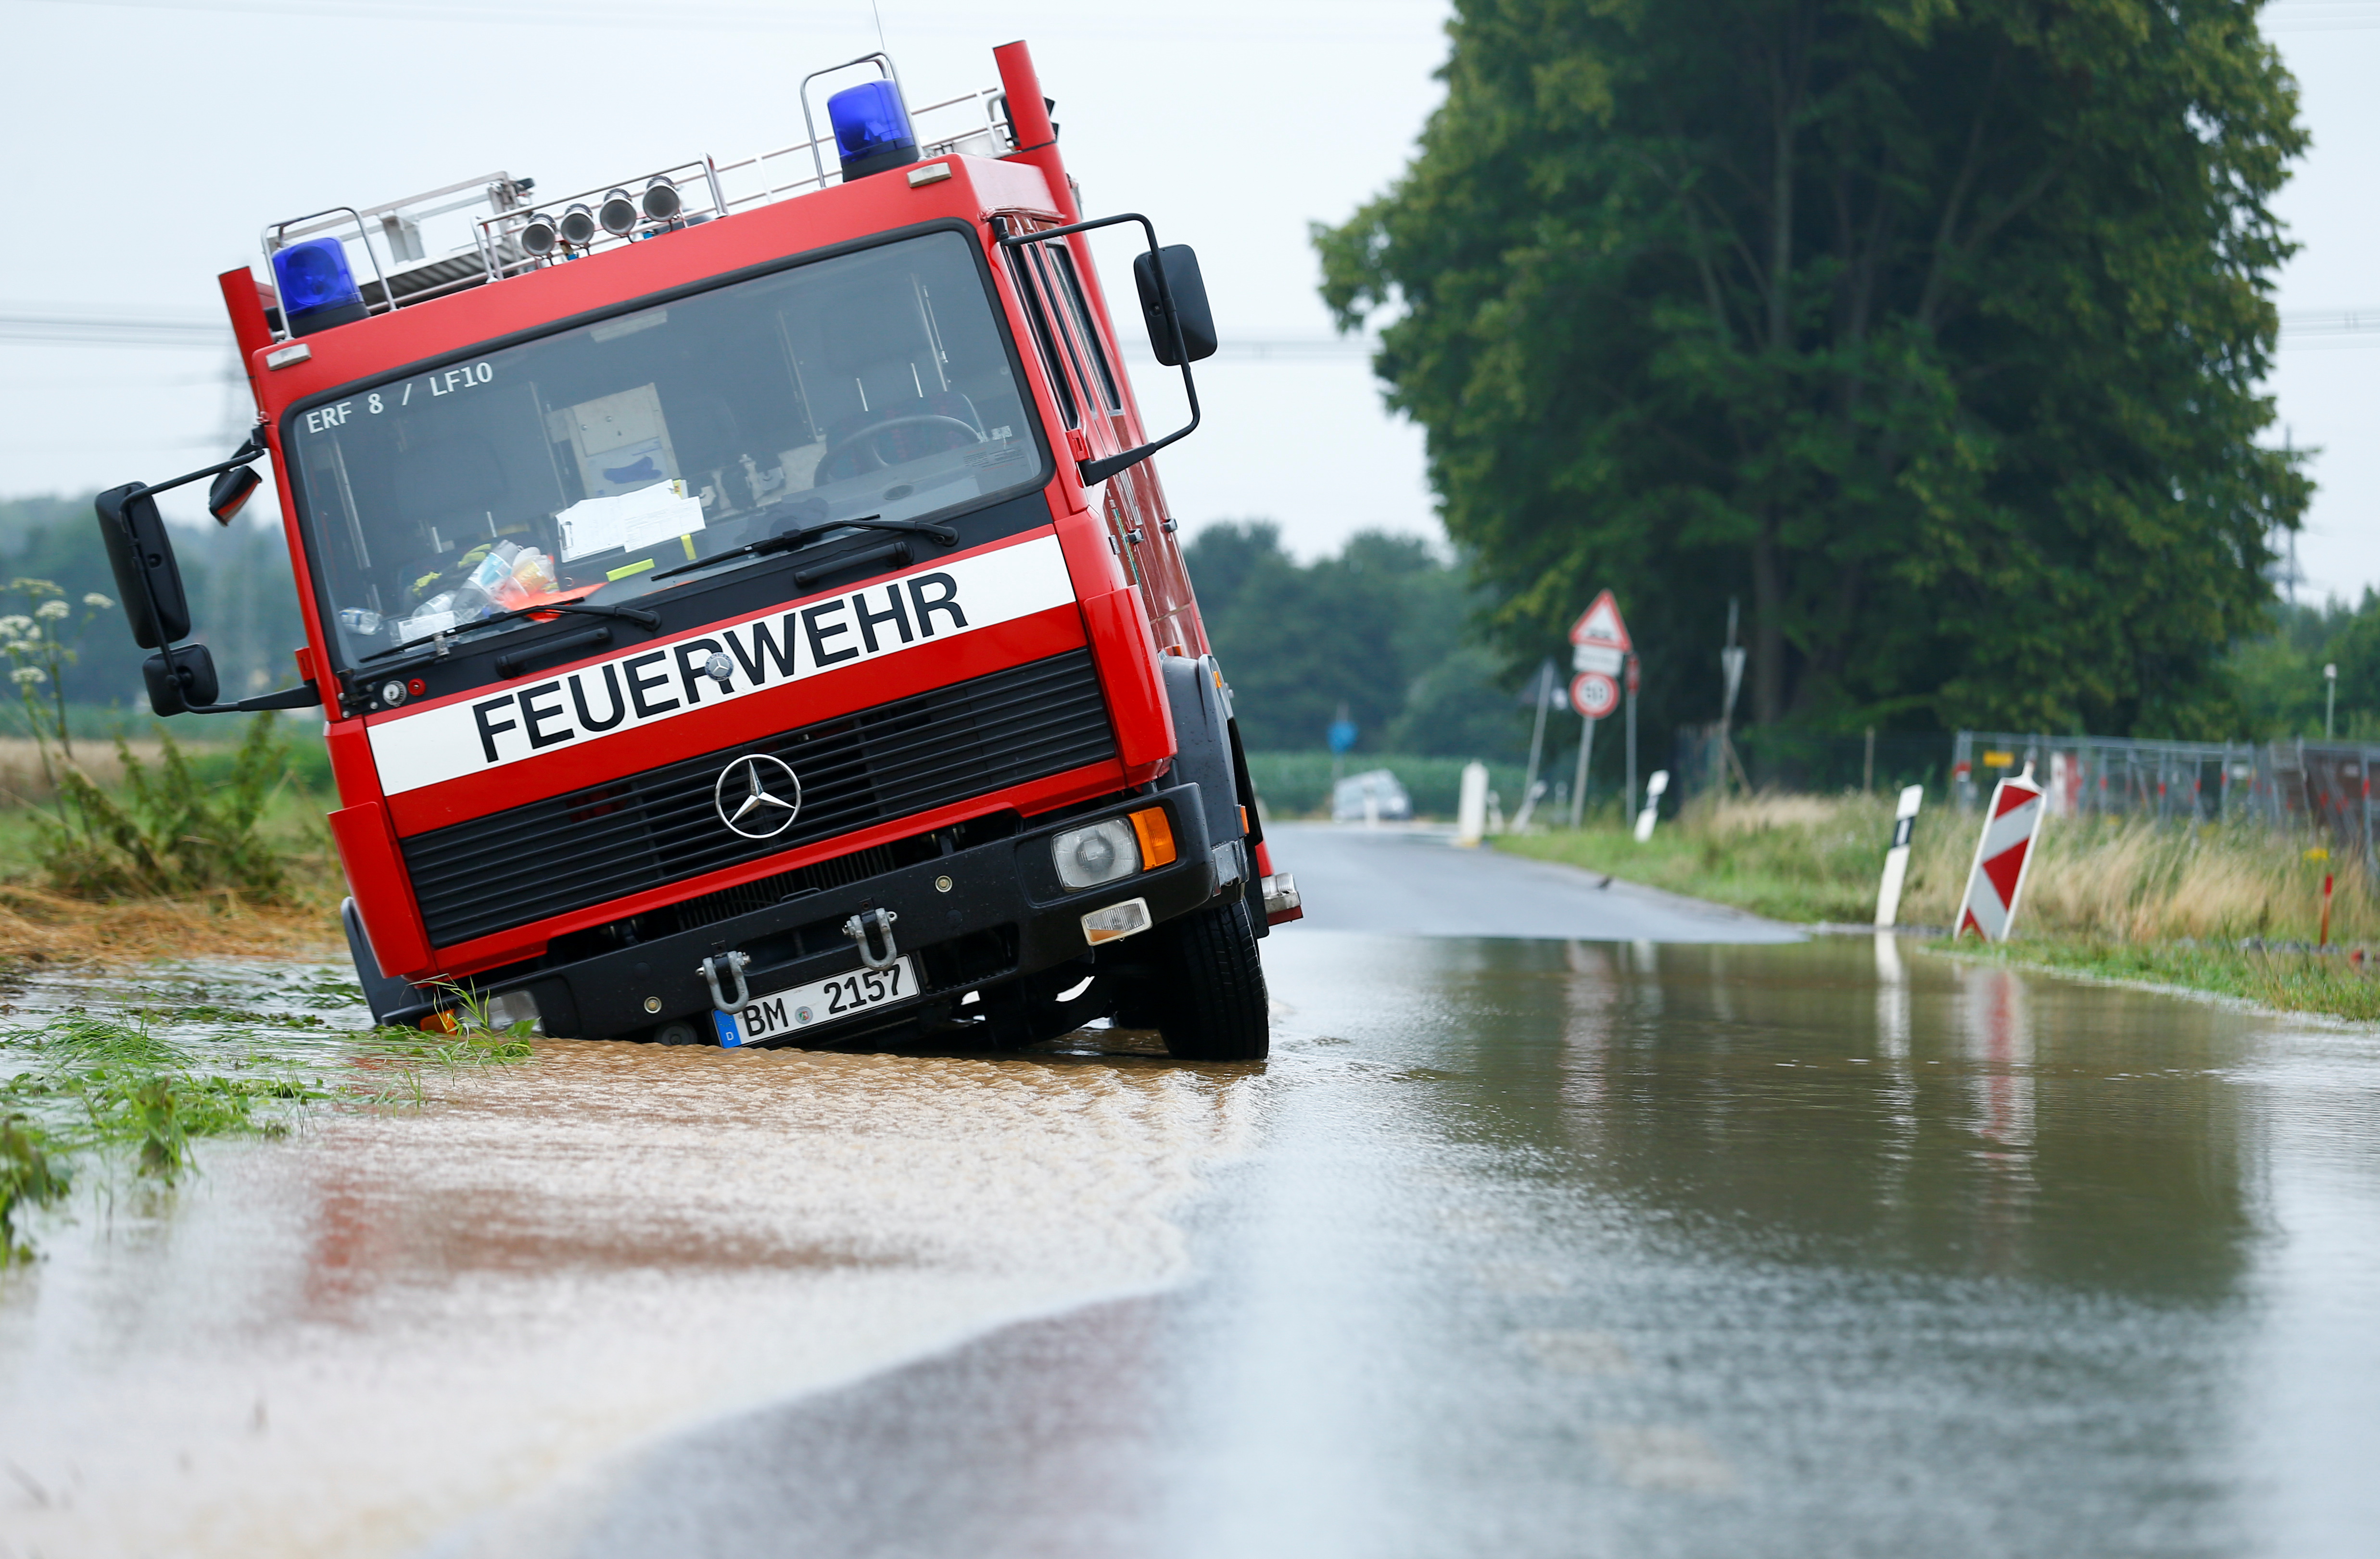 A fire truck is stuck on a flooded street following heavy rainfalls in Erftstadt, Germany, July 16, 2021. REUTERS/Thilo Schmuelgen